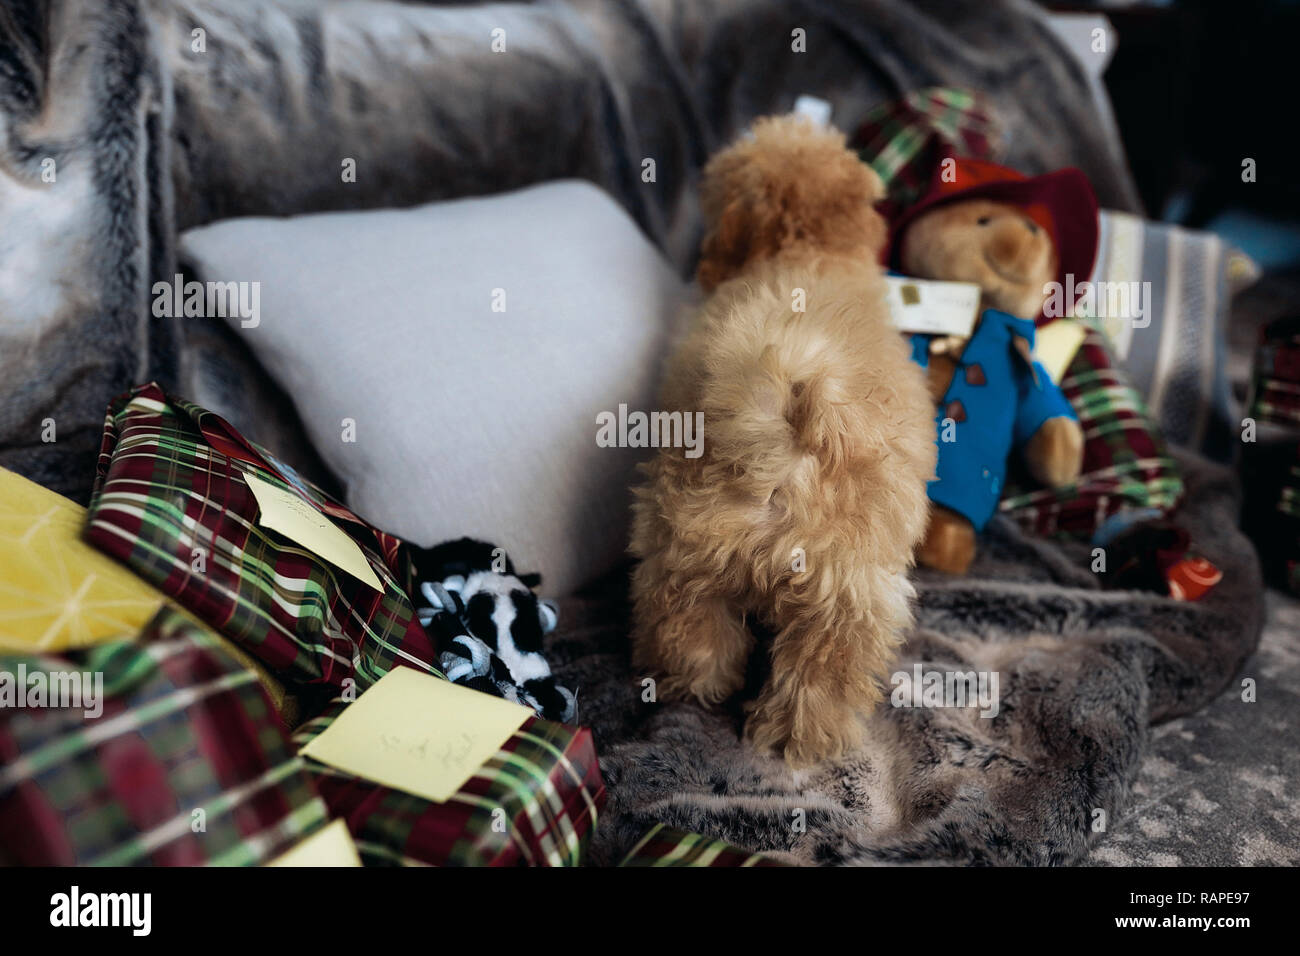 Piccolo cucciolo maltipoo con coda arricciata e il rosso dei capelli ricci, in piedi sul divano grigio con grandi cuscini e un sacco di regali per le vacanze di Natale. Cute cane Foto Stock